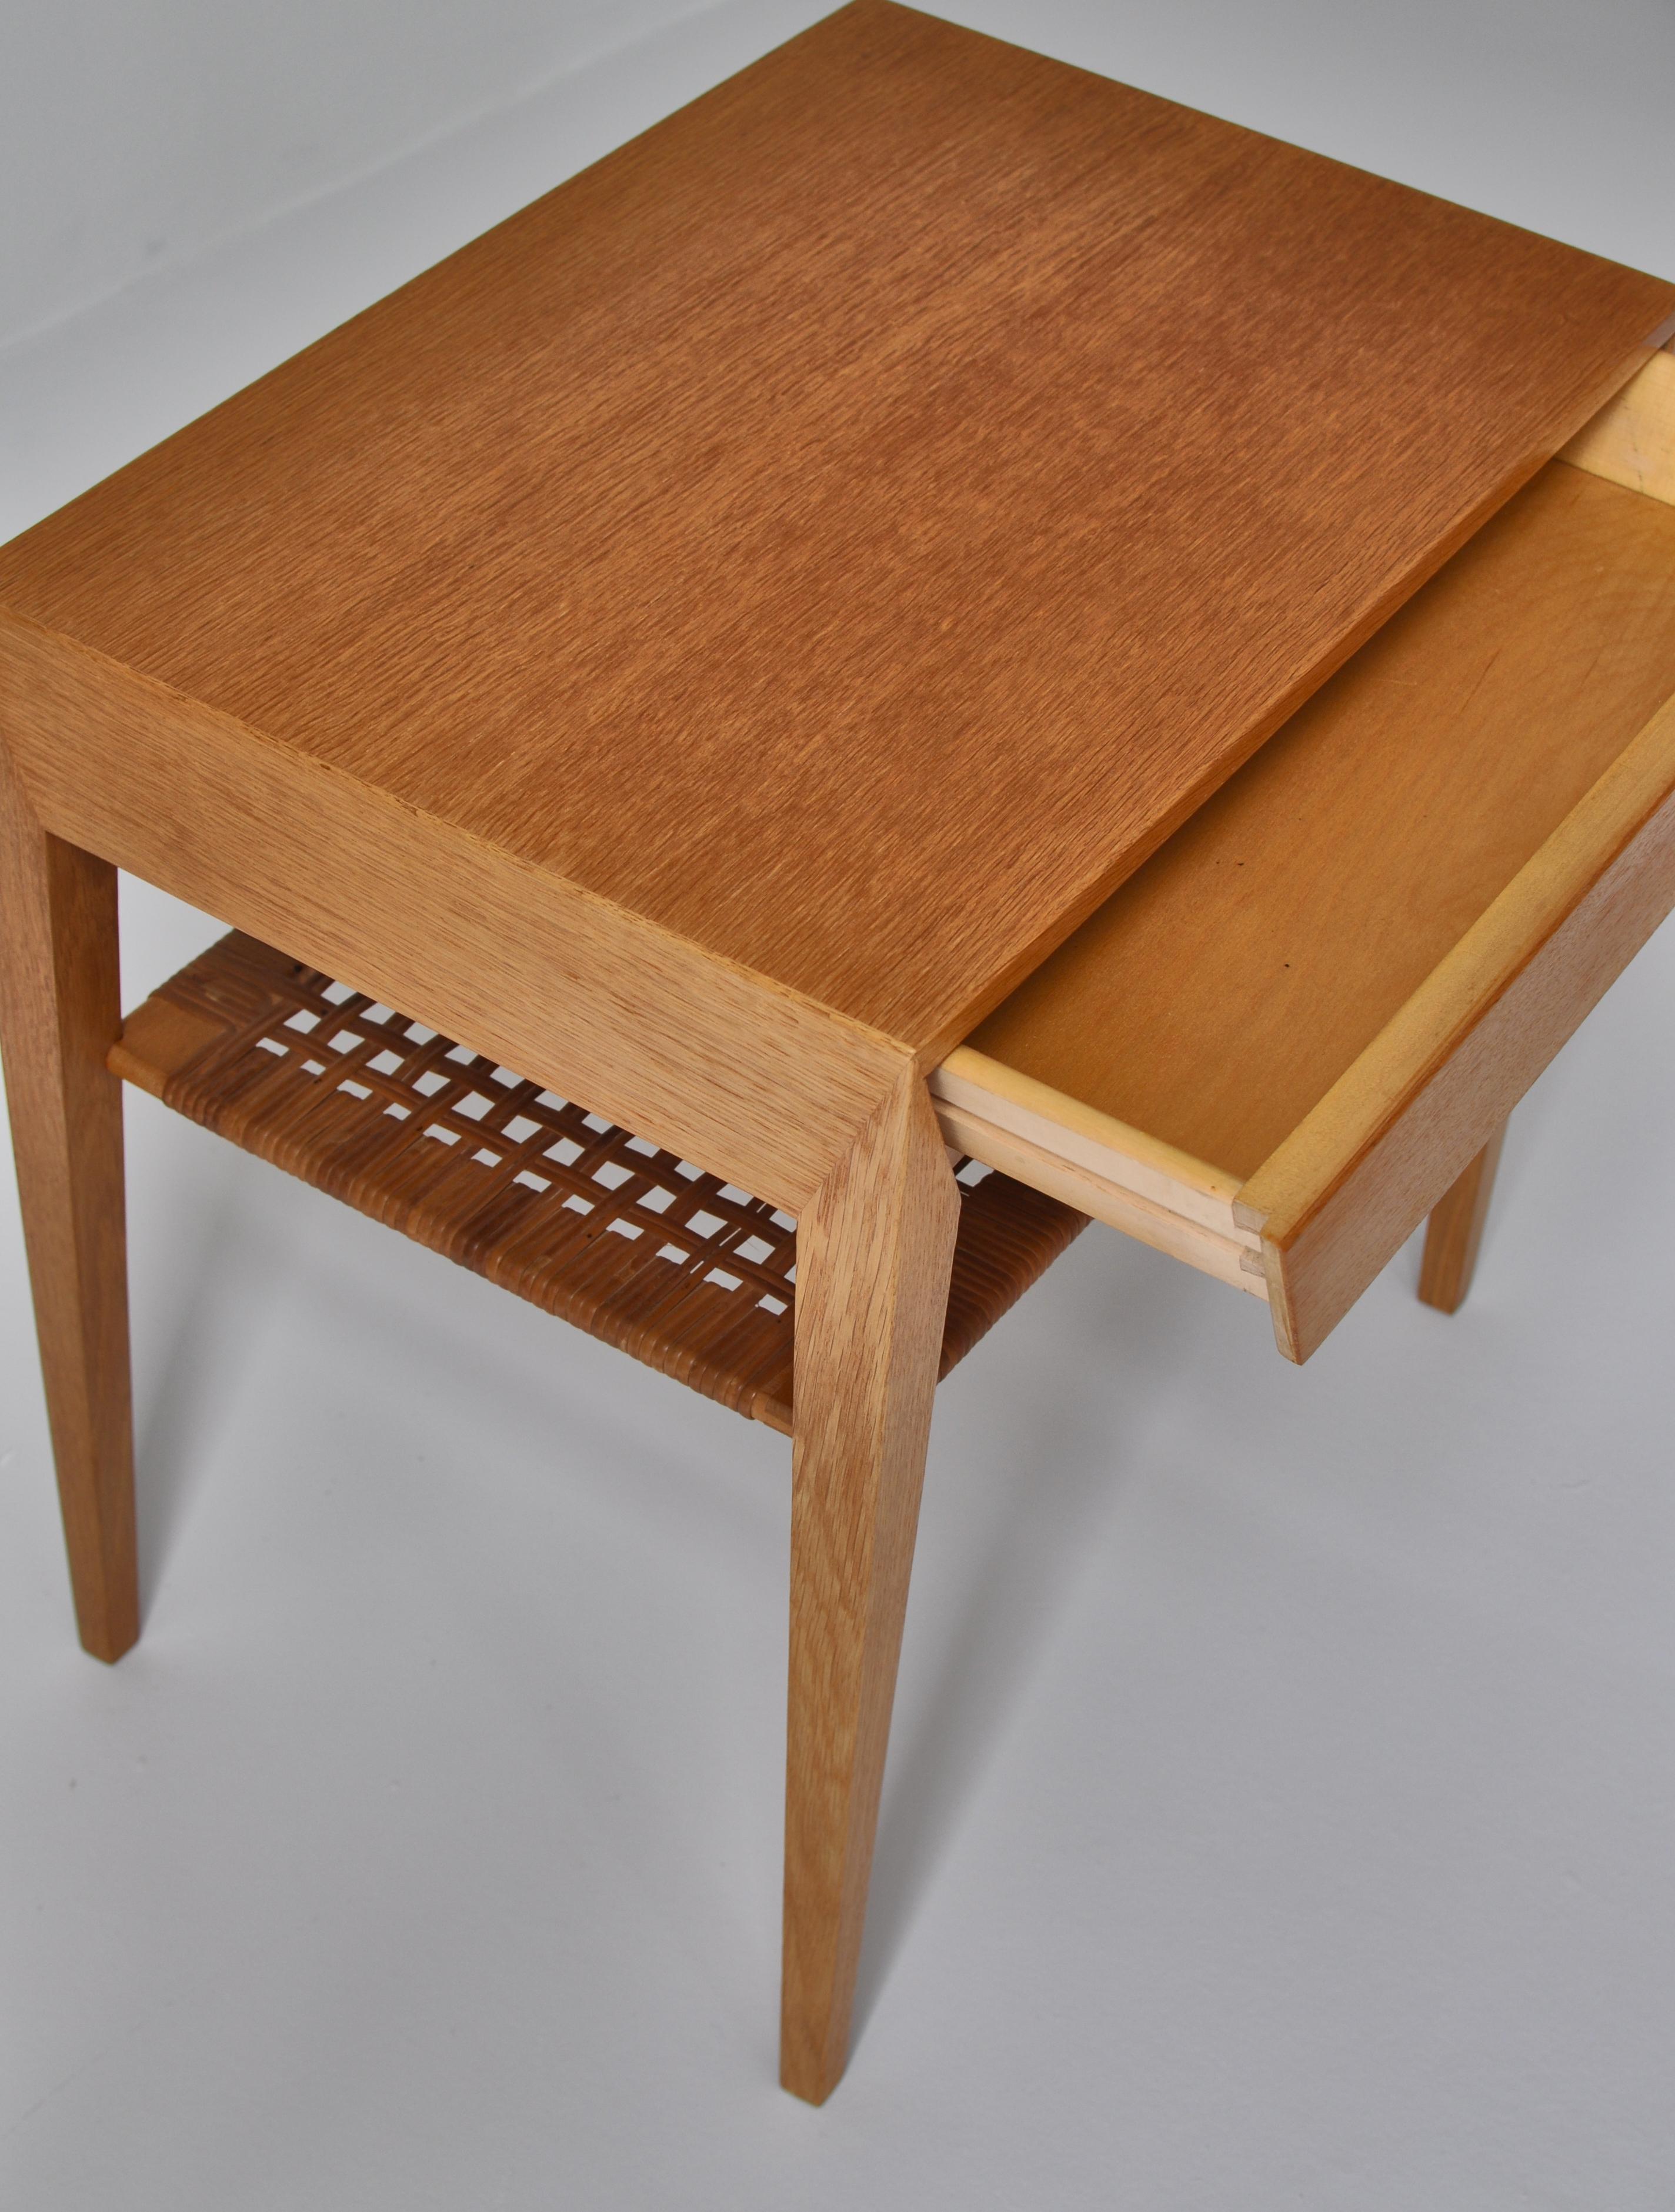 Danish Modern Oak Side Table with Shelf in Rattan Cane by Severin Hansen, 1950s 4